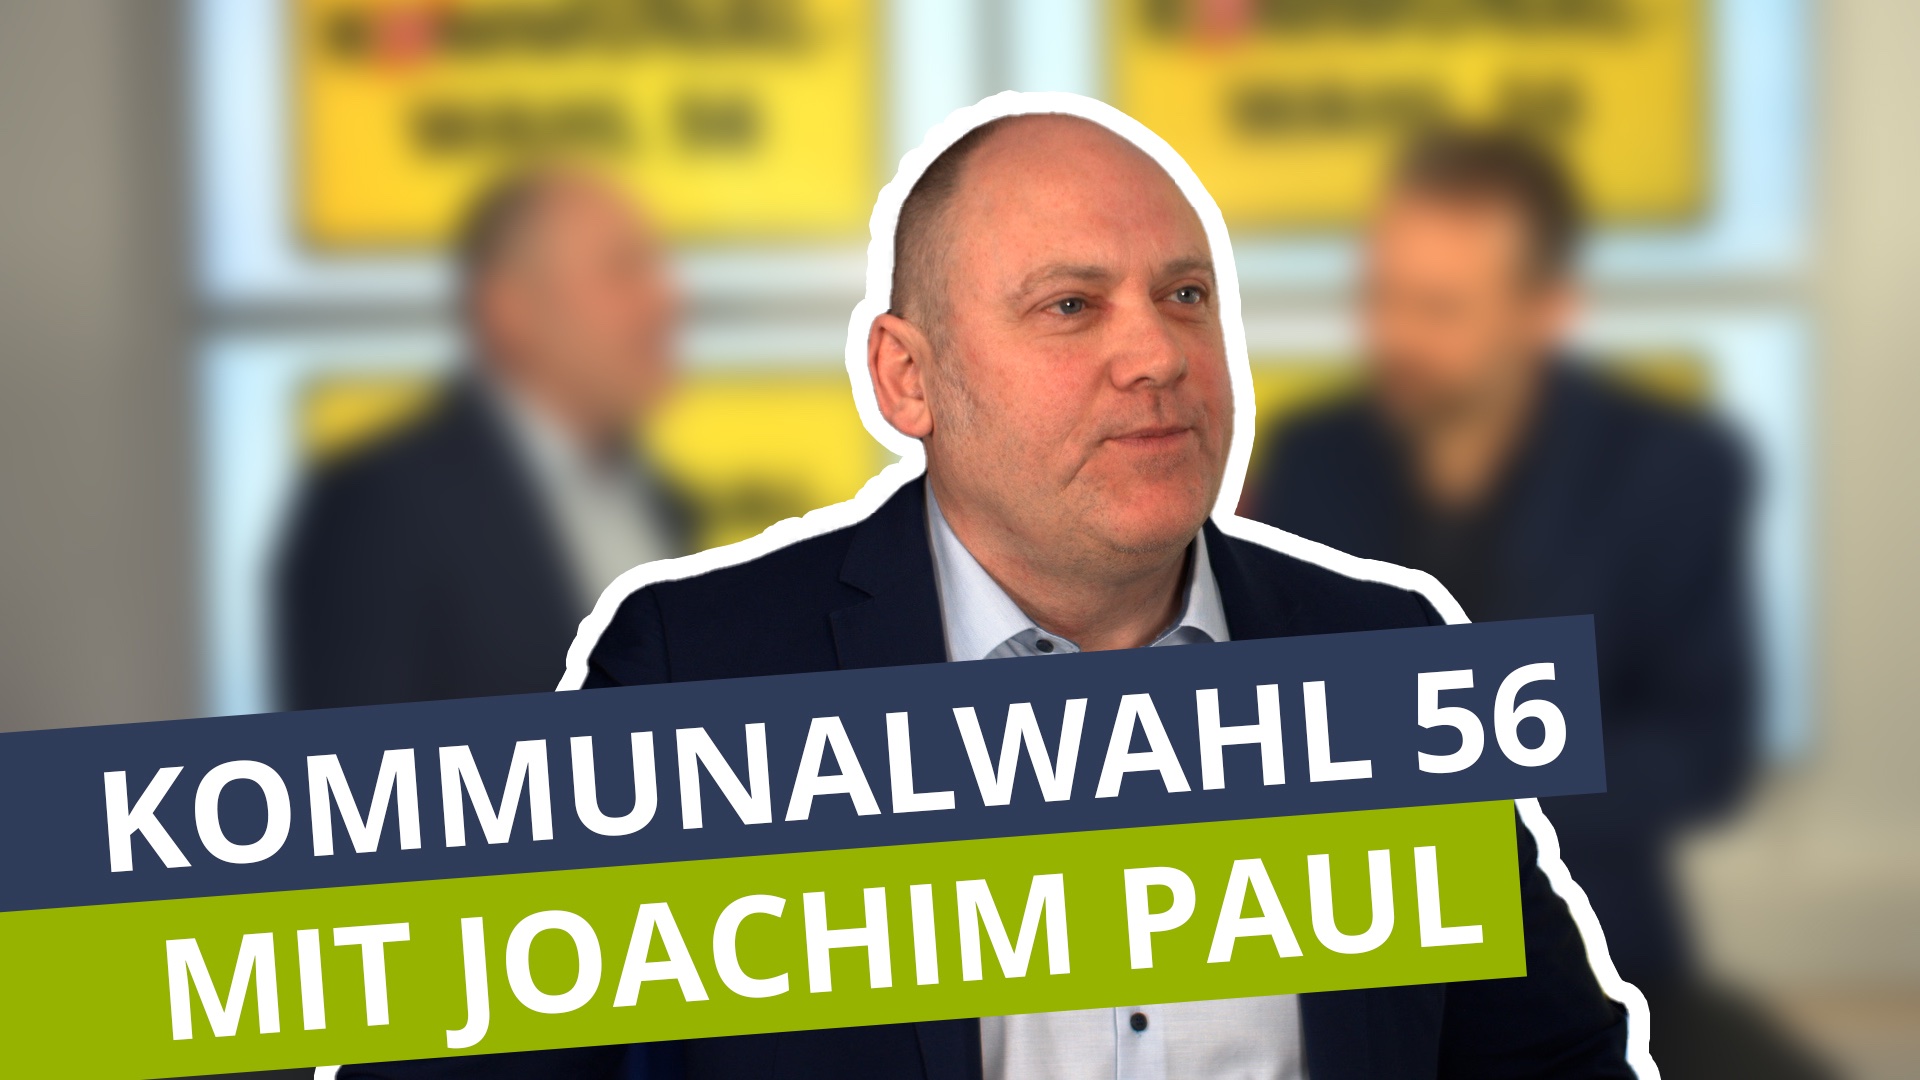 Kommunalwahl 56: Joachim Paul von der AfD Koblenz